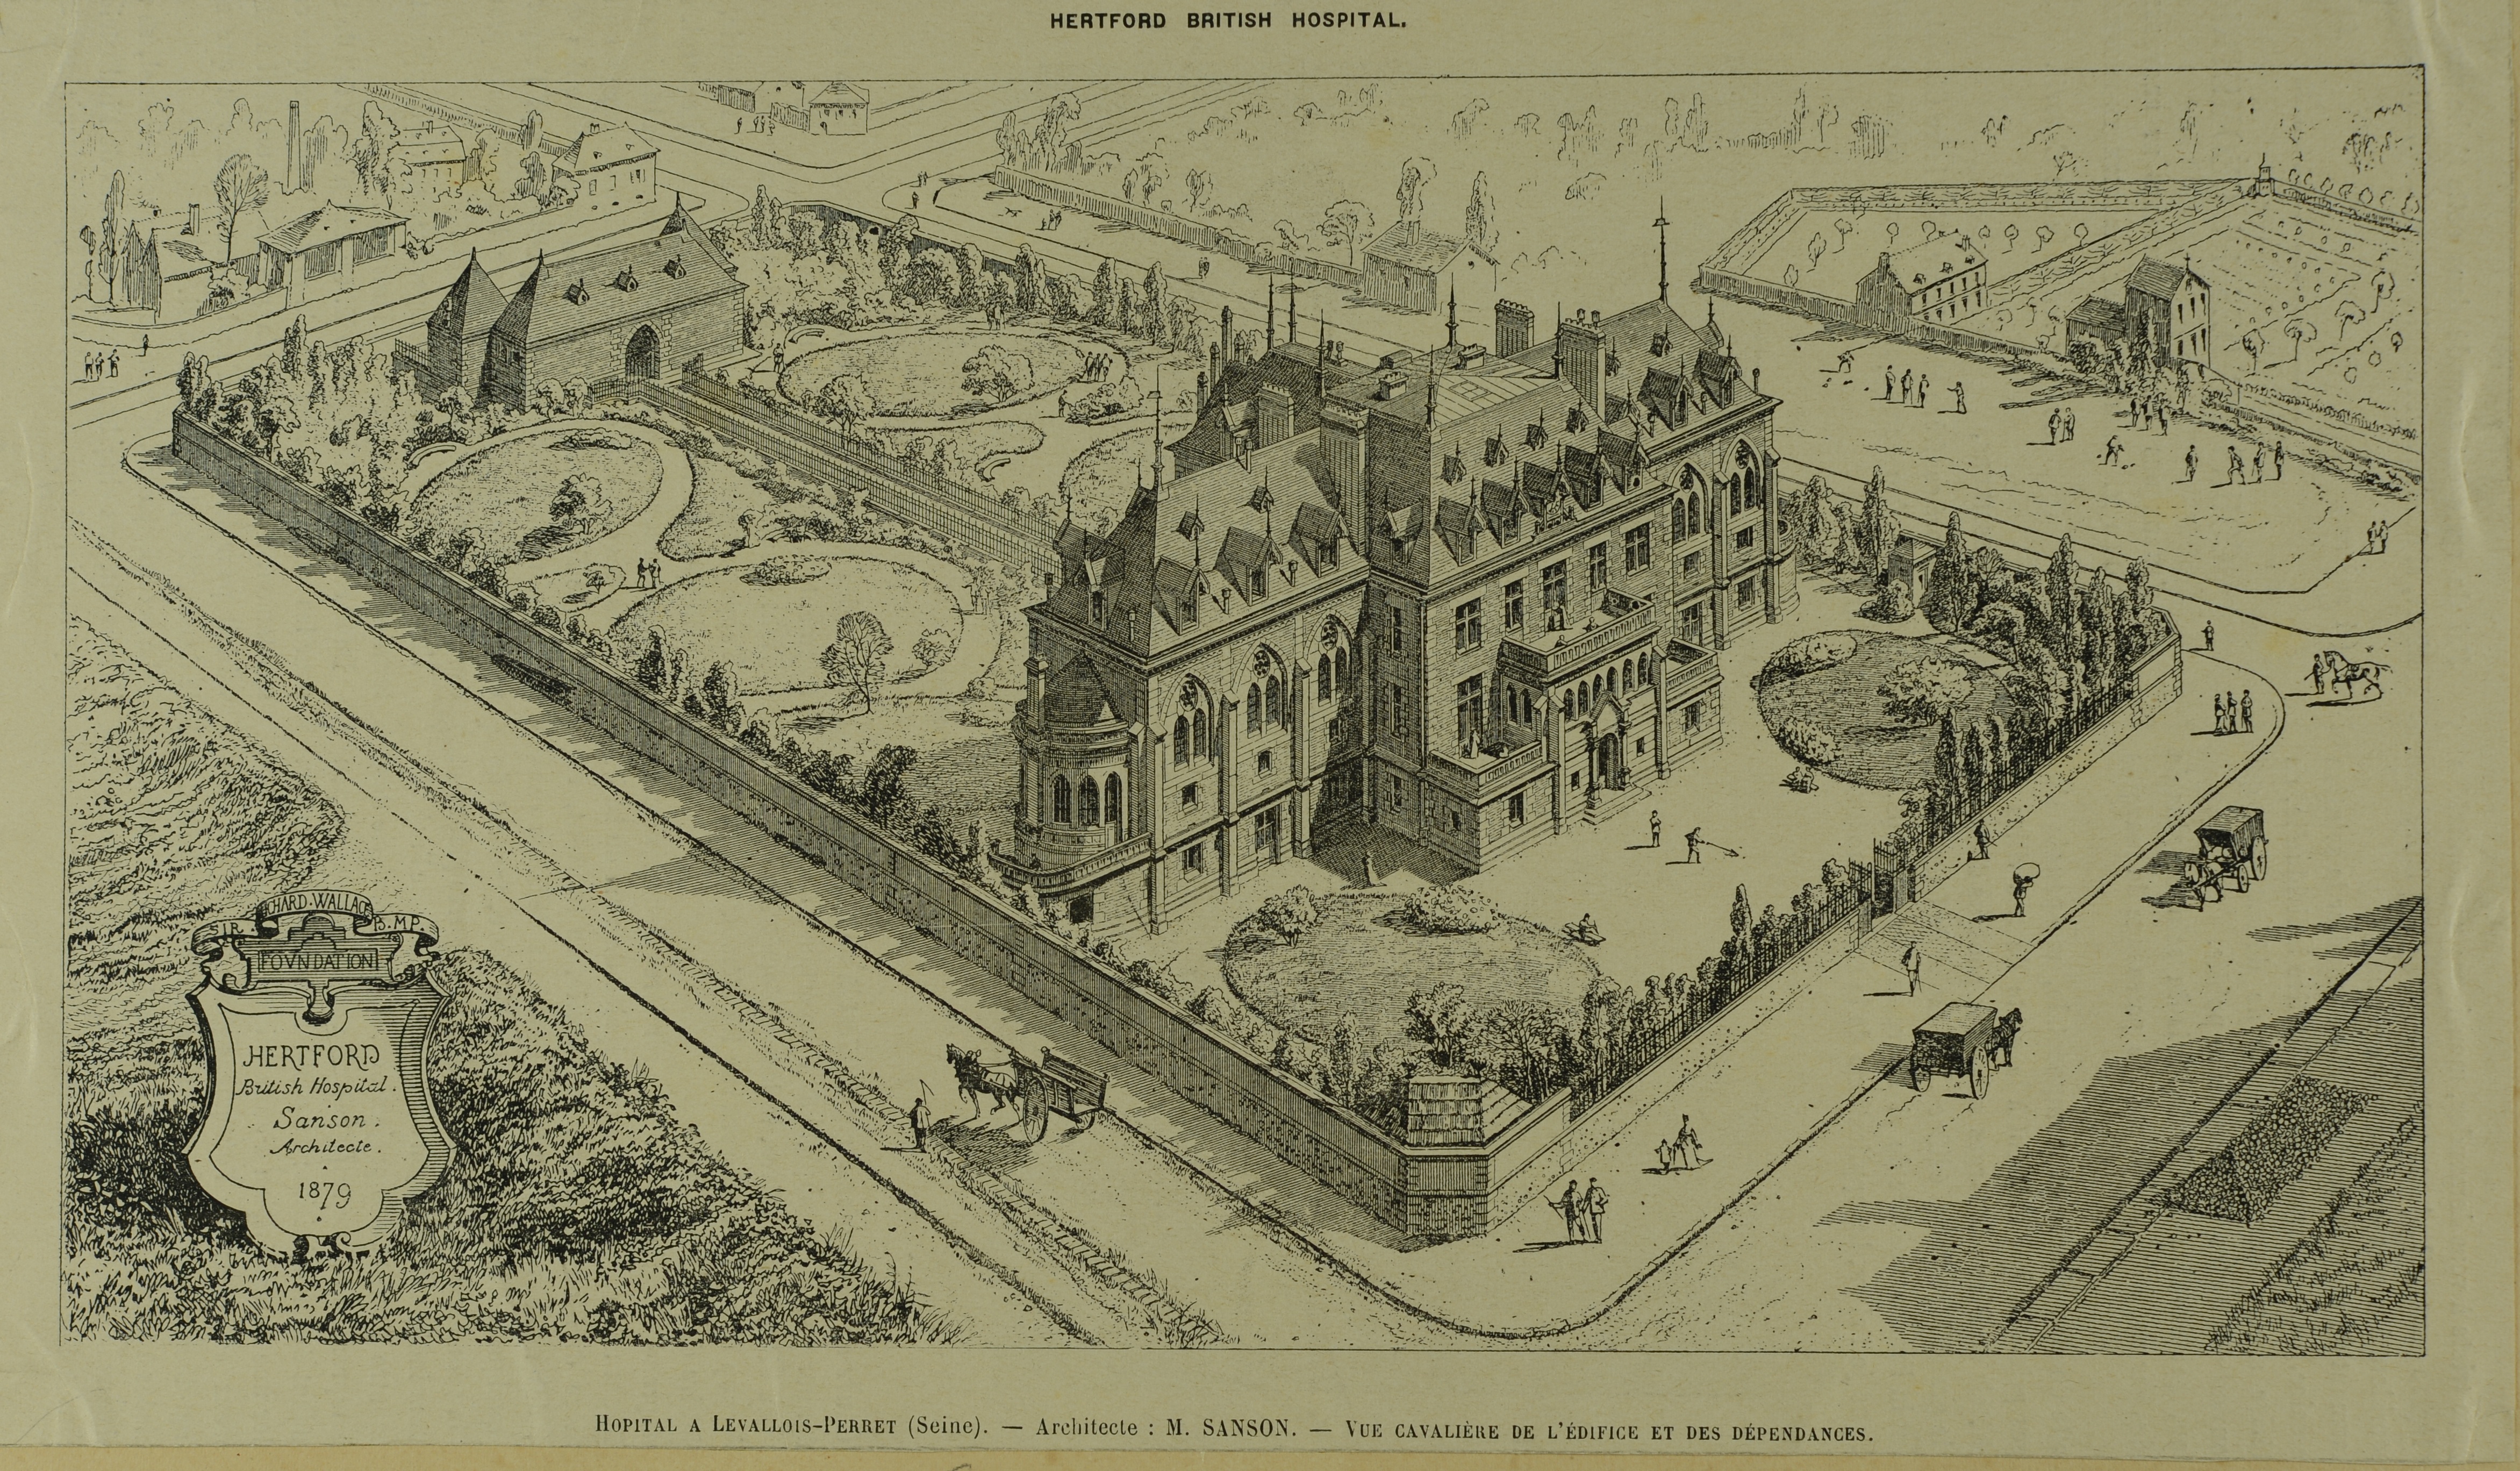 Hôpital Hertford à Le vallois-Perret, vue cavalière de l'édifice et de ses dépendances, 1879.Archives départementales des Haut-de-Seine, 1FI/LV2